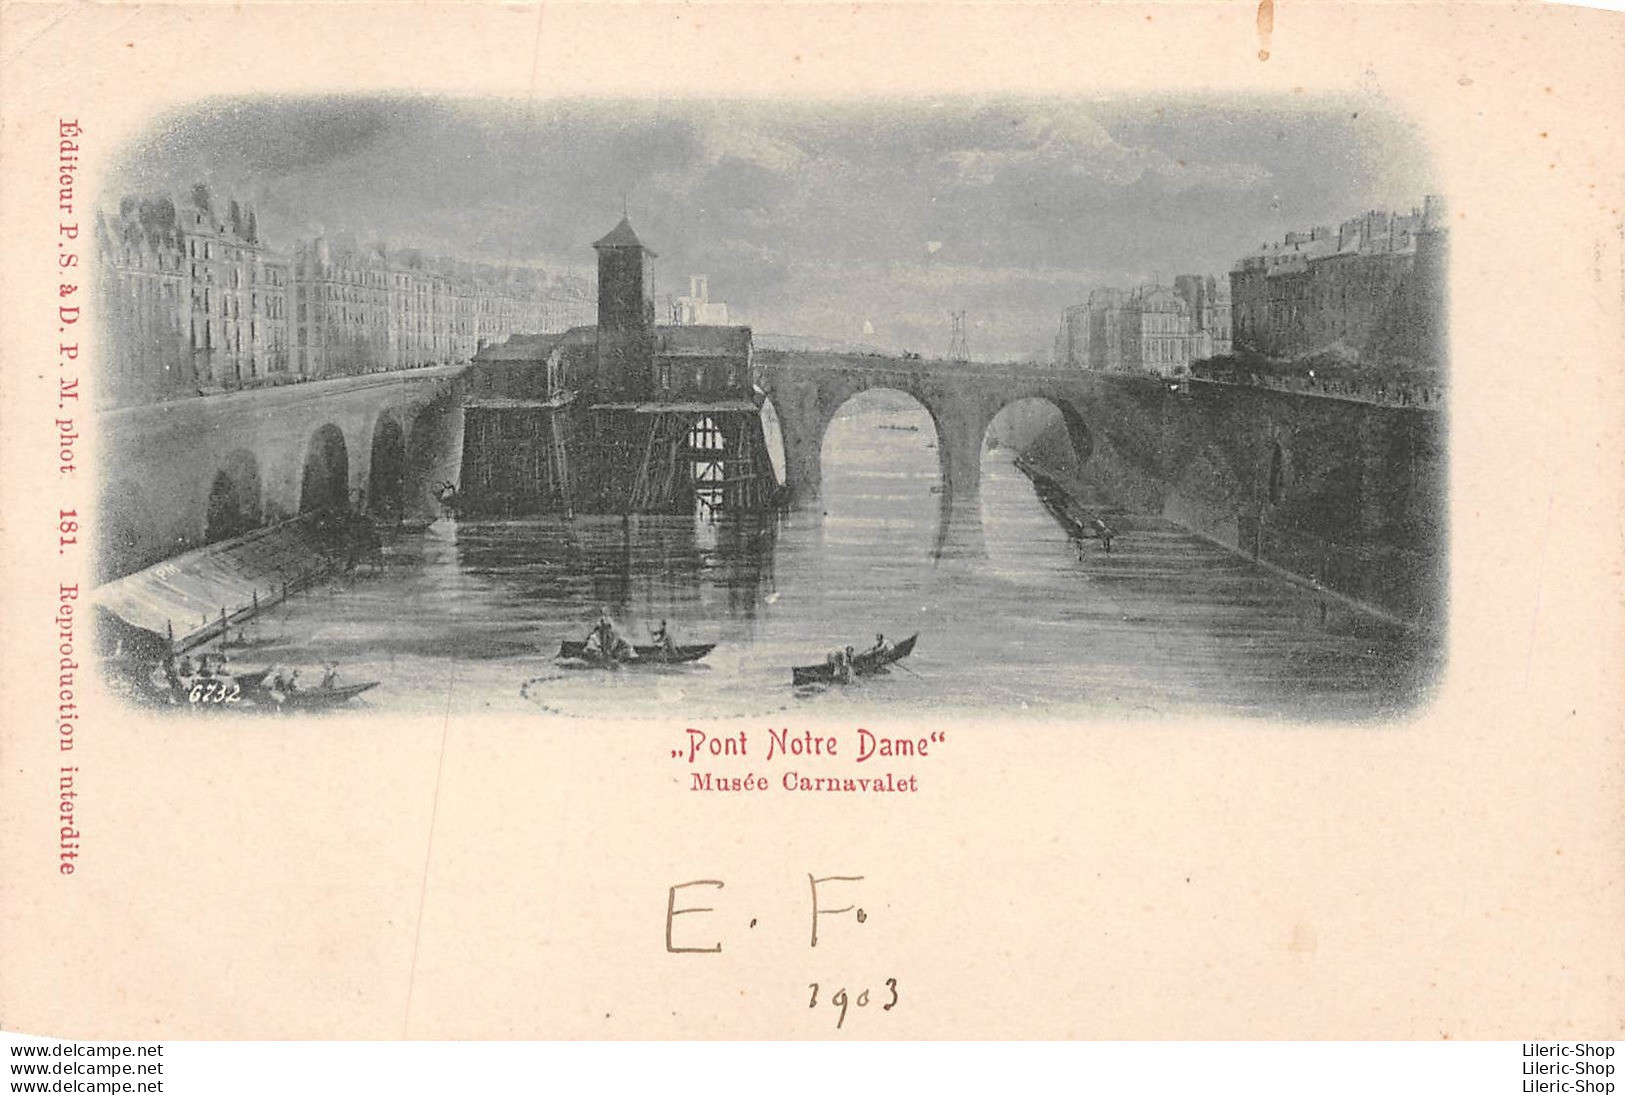 Musée Carnavalet -  " Pont Notre Dame " - Éditeur P.S. à D.P.M. Phot. 181 - 1903 CPR - Museum